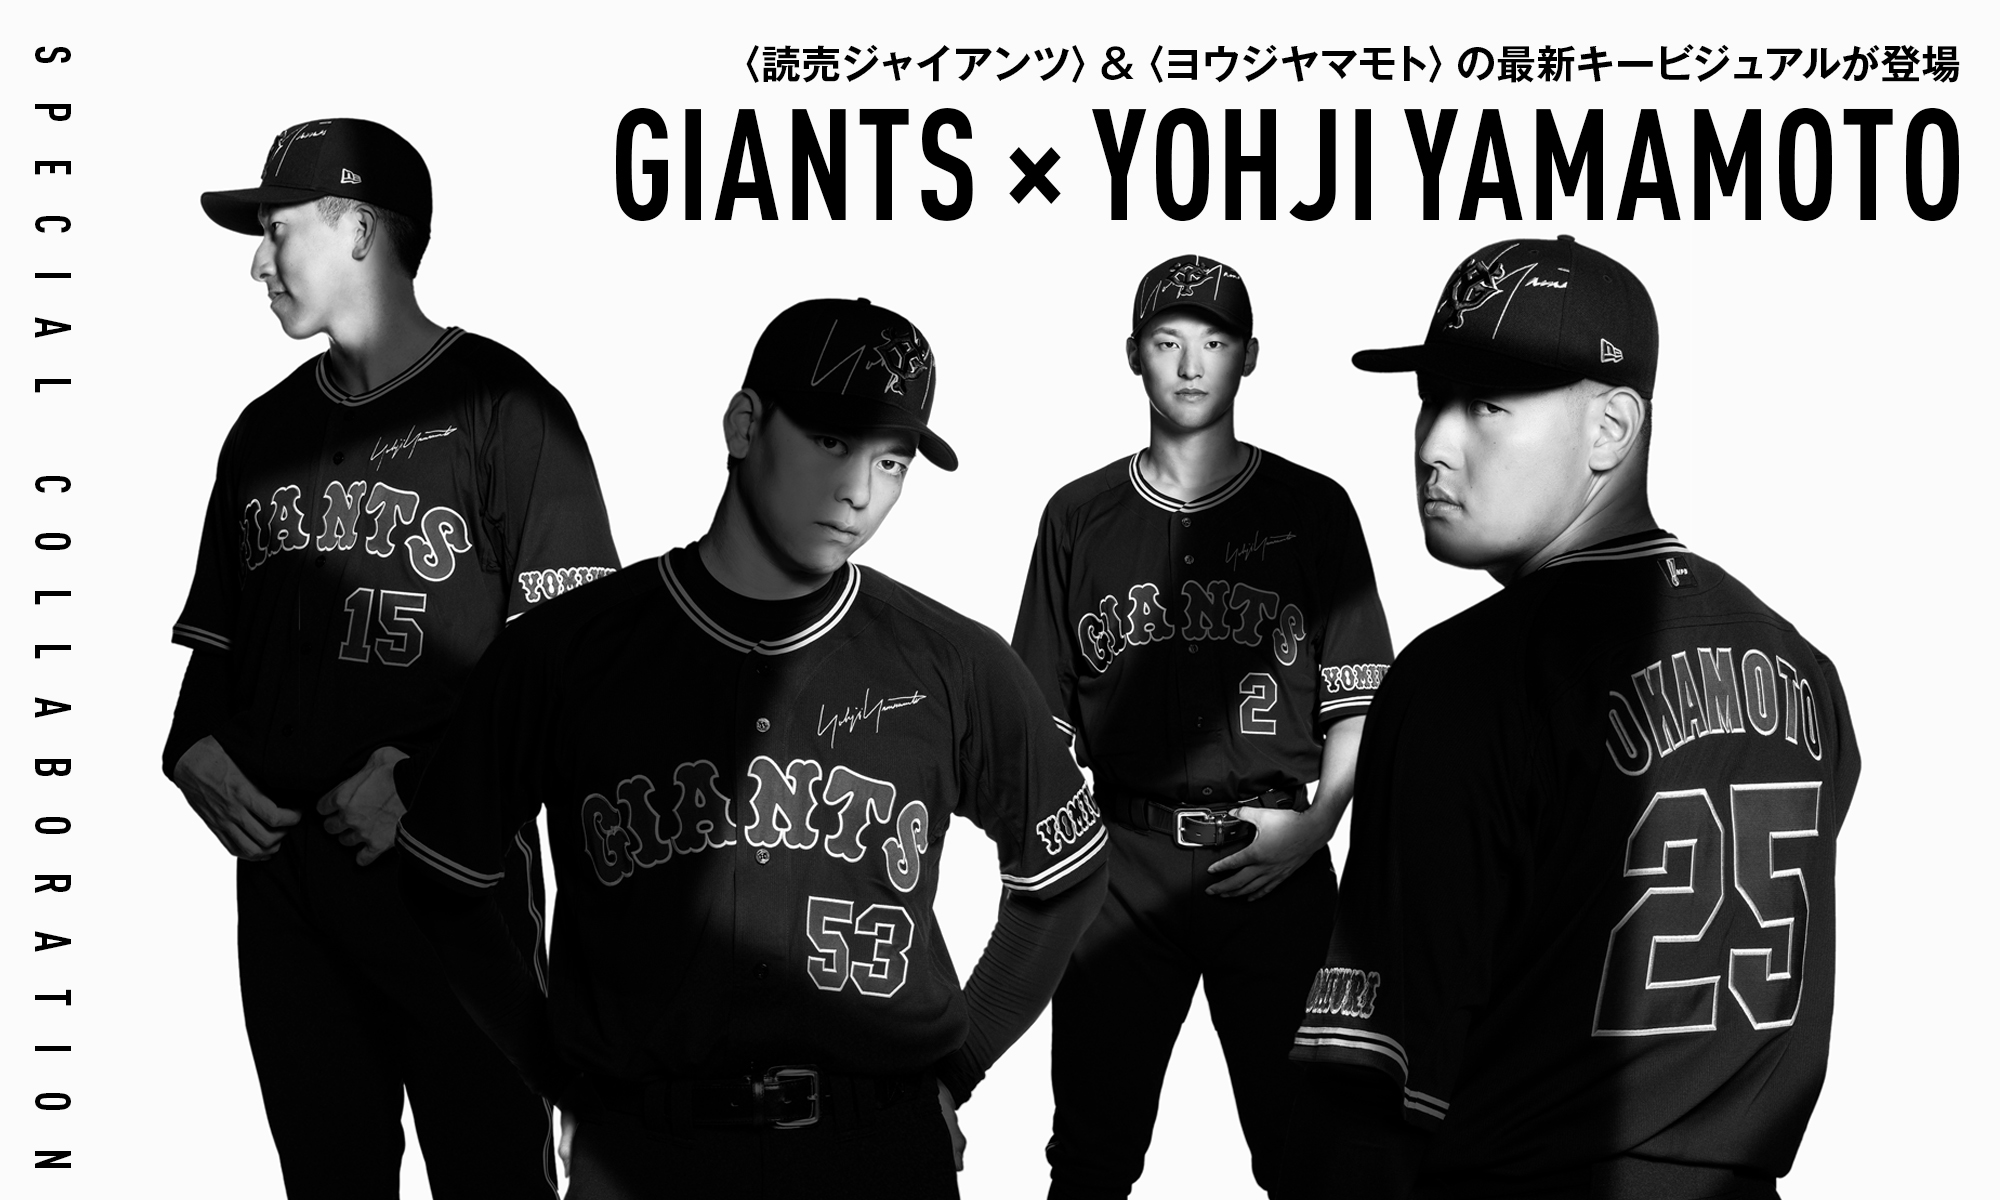 岡本和真選手 GIANTS ×Yohji Yamamoto レプリカユニホーム - ウェア